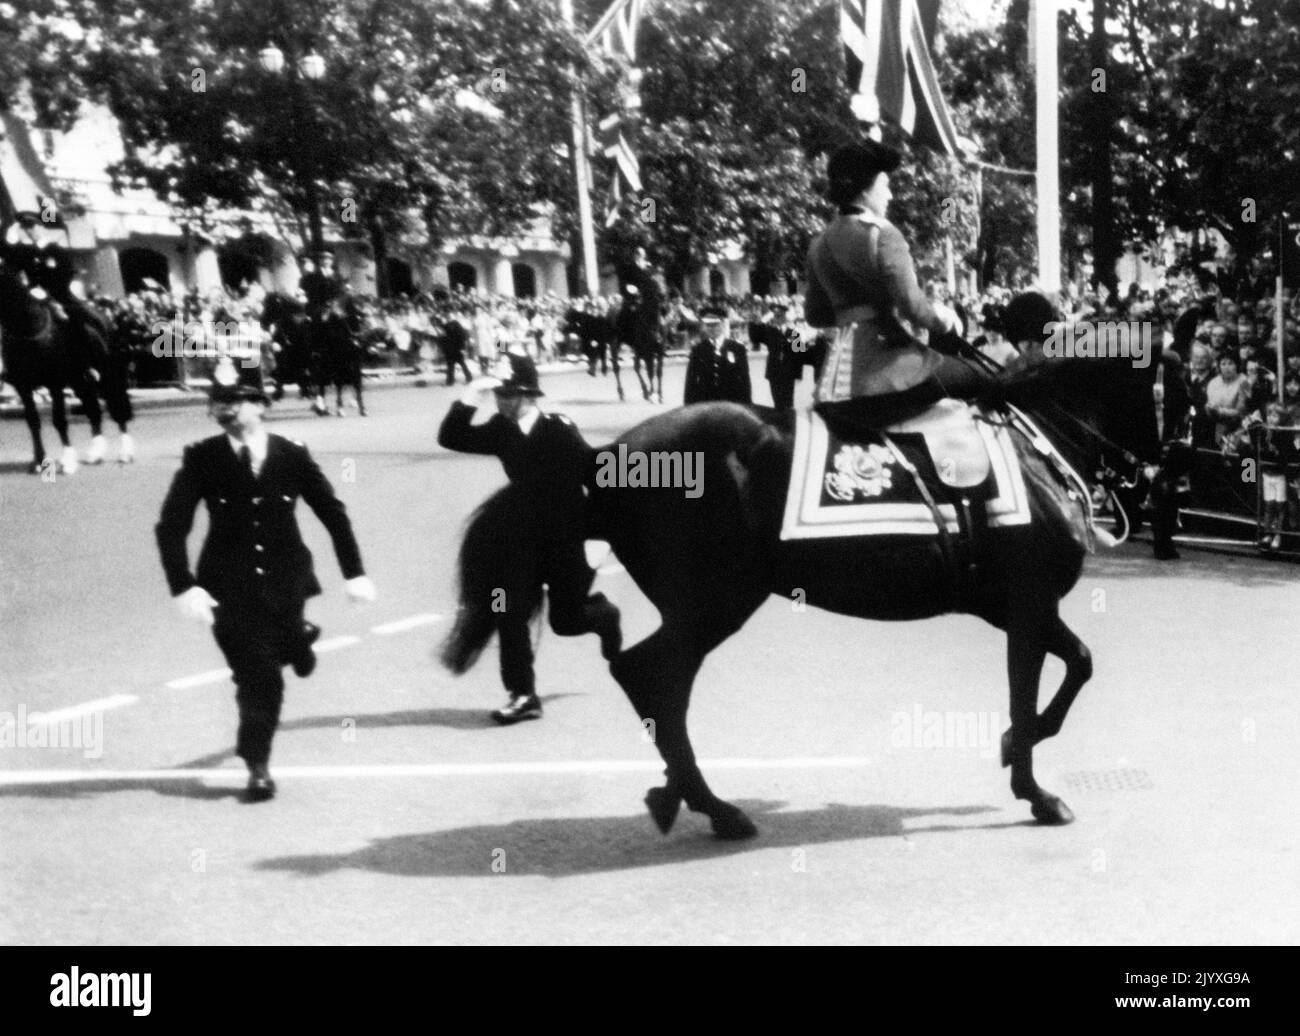 Aktenfoto vom 13/6/1981 von Königin Elizabeth II., die ihr Pferd Burma beruhigt, während ein Polizist zum Einsatz kommt, nachdem Schüsse gehört wurden, als sie die Mall hinunter ritt. Pferde, wie Hunde, waren die lebenslange Liebe der Königin und sie hatte ein unglaubliches Wissen über Zucht und Blutslinien. Ob es nun Vollblutrennen oder Ponys waren, sie zeigte ein unfehlbare Interesse. Ausgabedatum: Donnerstag, 8. September 2022. Stockfoto